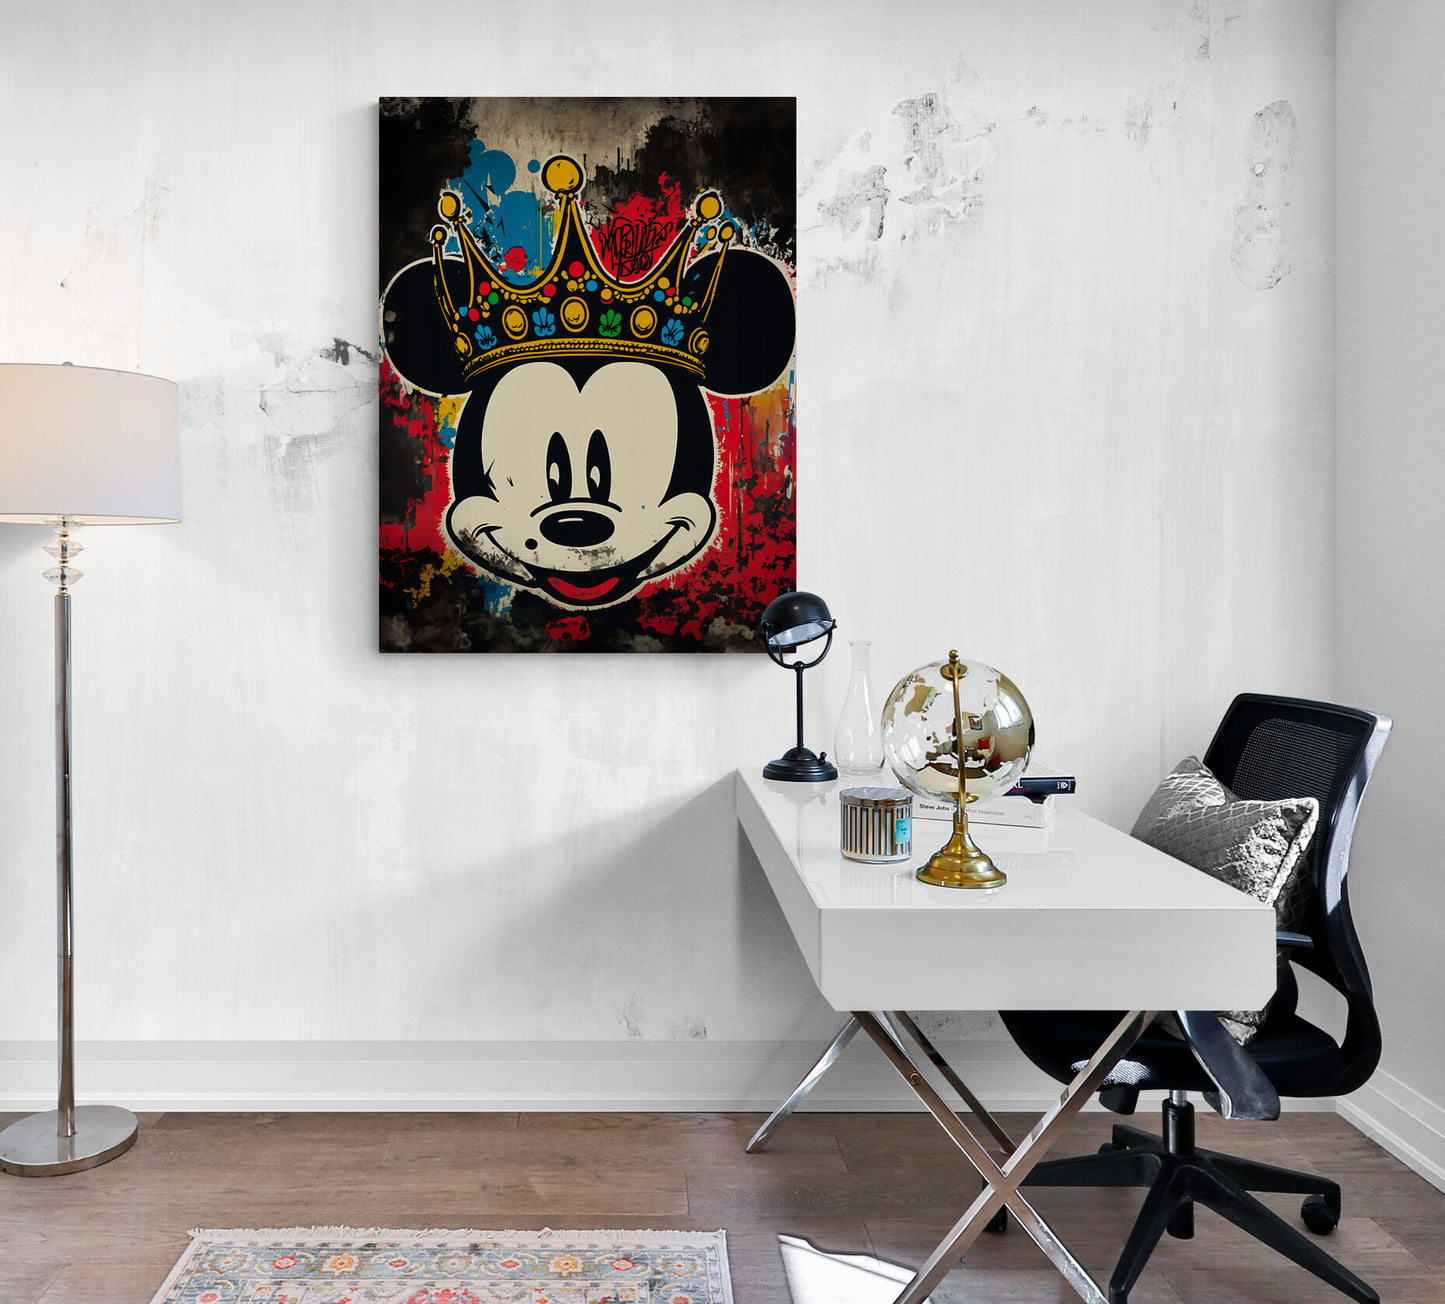 ableau "Mickey Street Art" dans un bureau professionnel. Il apporte une touche d'originalité et de décalé à l'environnement de travail